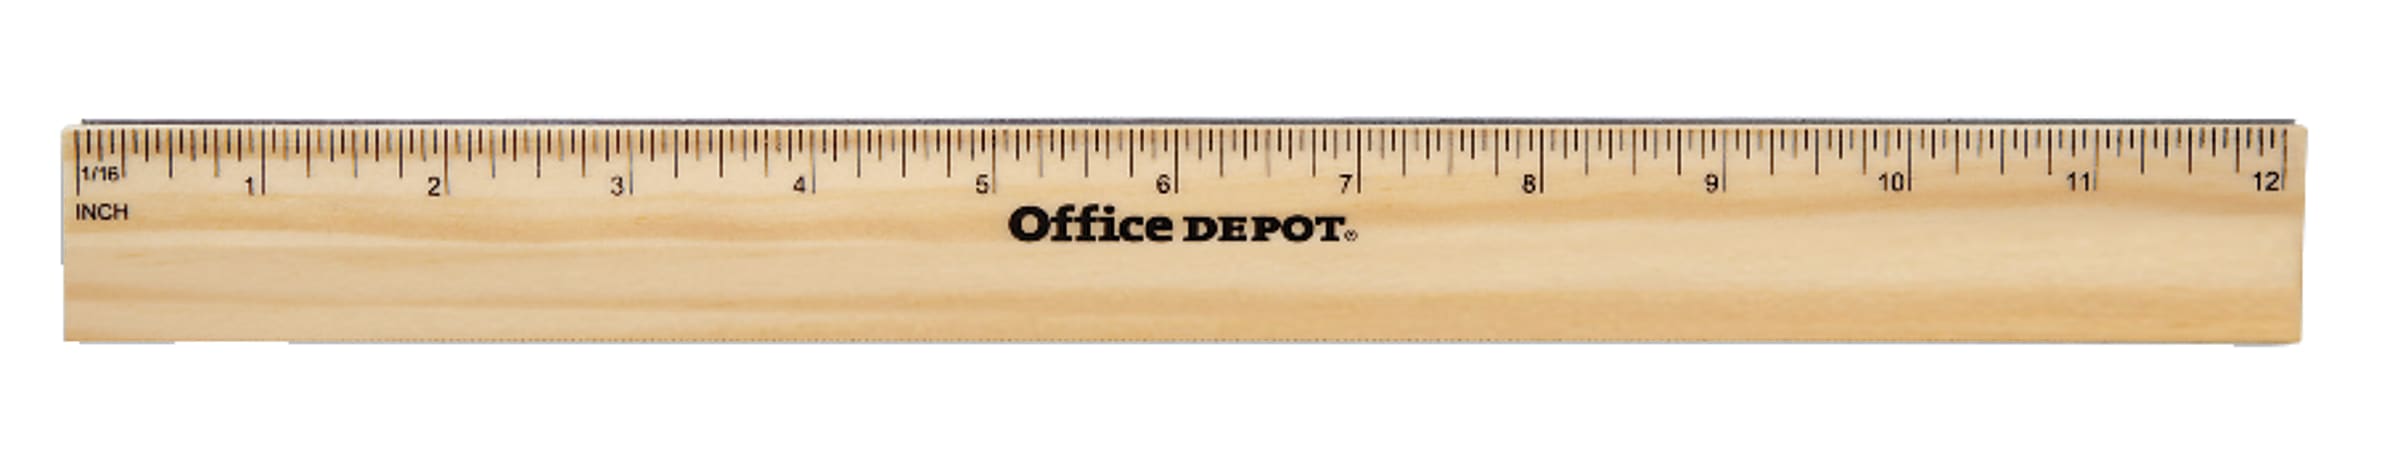 Office Depot Brand Wood Metal Edge Ruler 12 - Office Depot